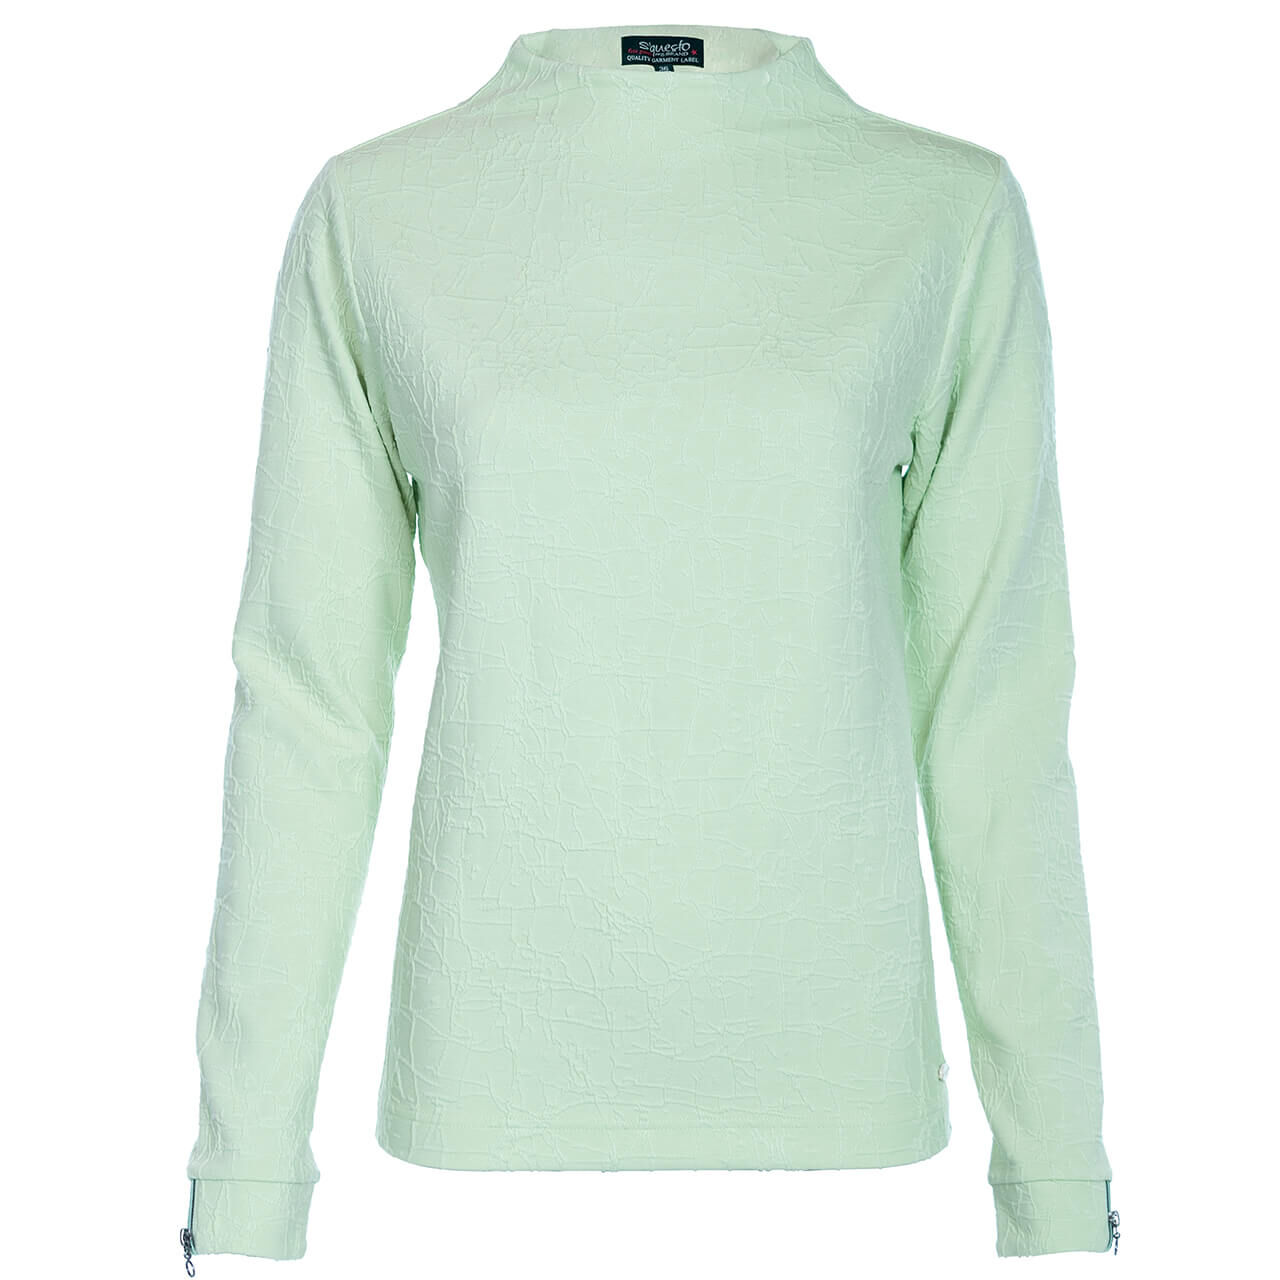 Soquesto Sweatshirt für Damen in Mintgrün, FarbNr.: 3993